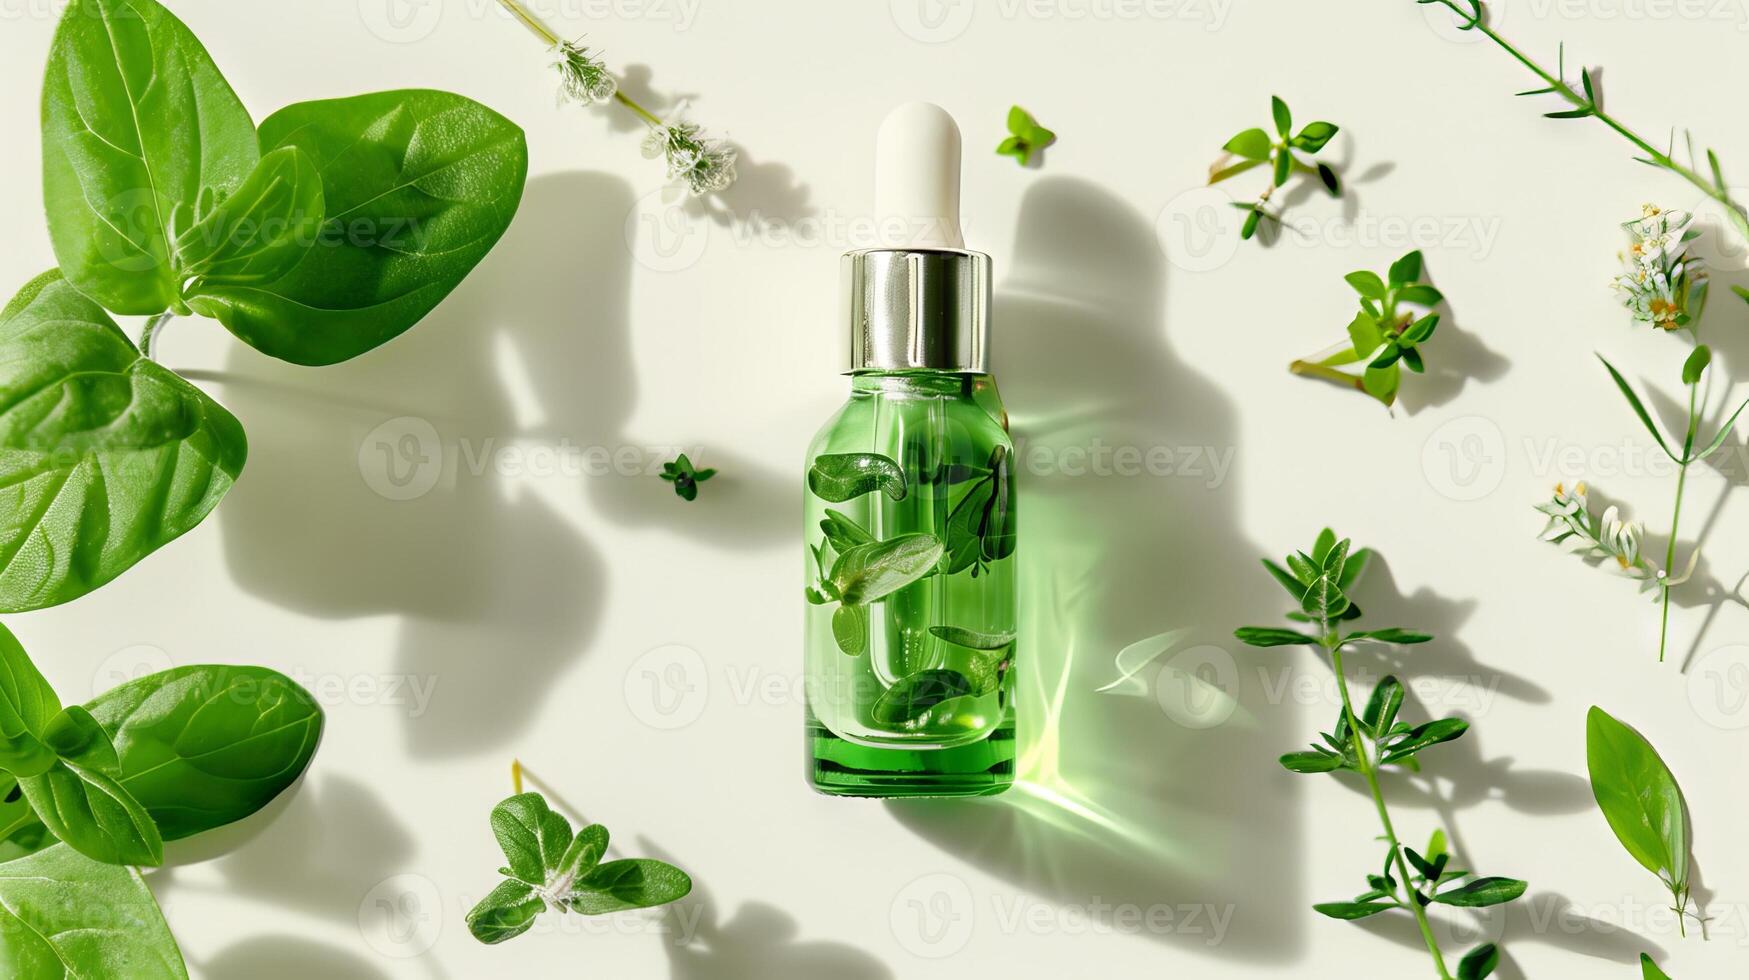 grundläggande olja. botanisk extrahera i dropper flaska med grön löv runt om. vit bakgrund. begrepp av väsen, naturlig hudvård, organisk skönhet Produkter, aromaterapi, ört- kosmetika. topp se. foto